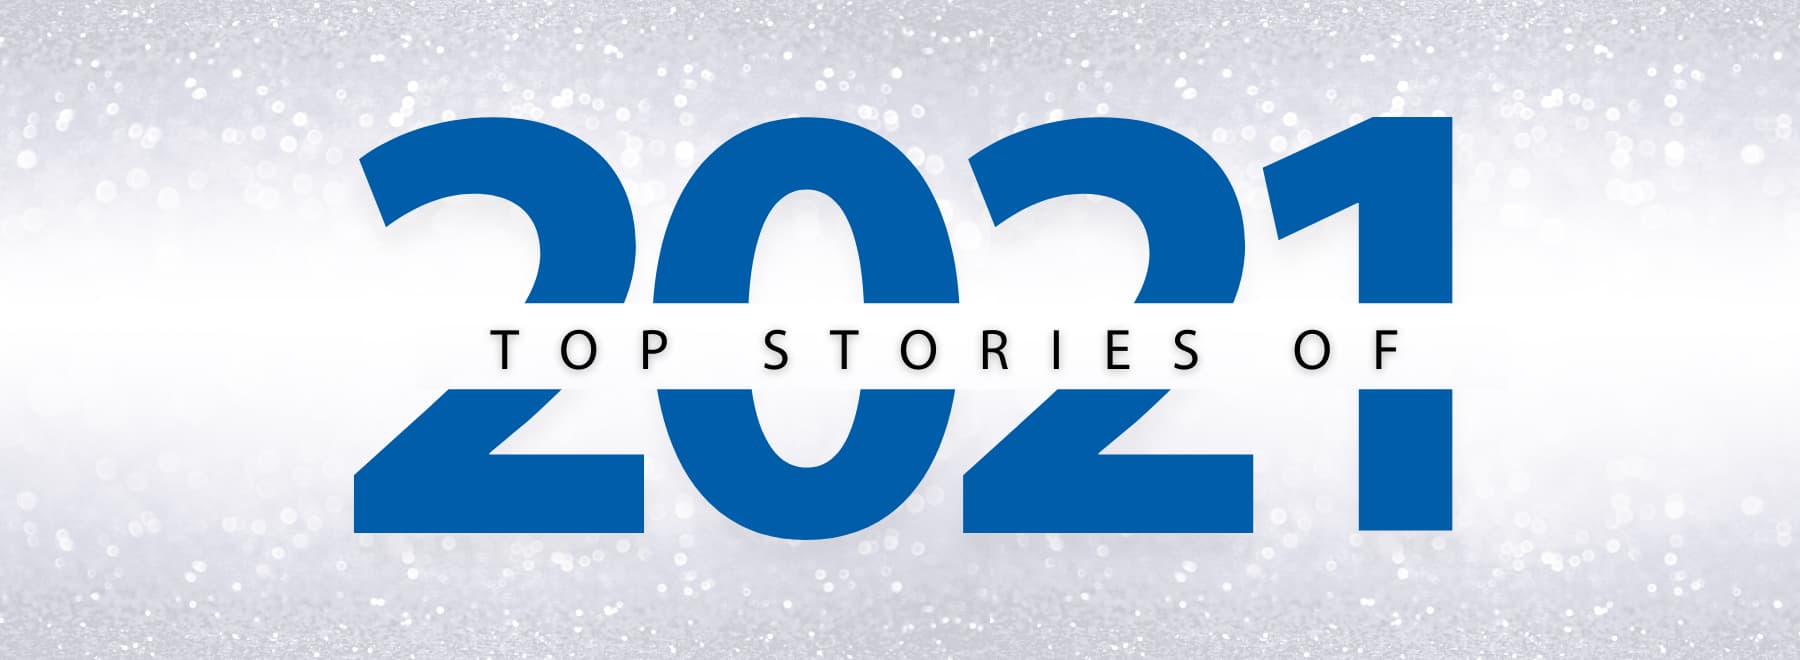 Top Stories of 2021